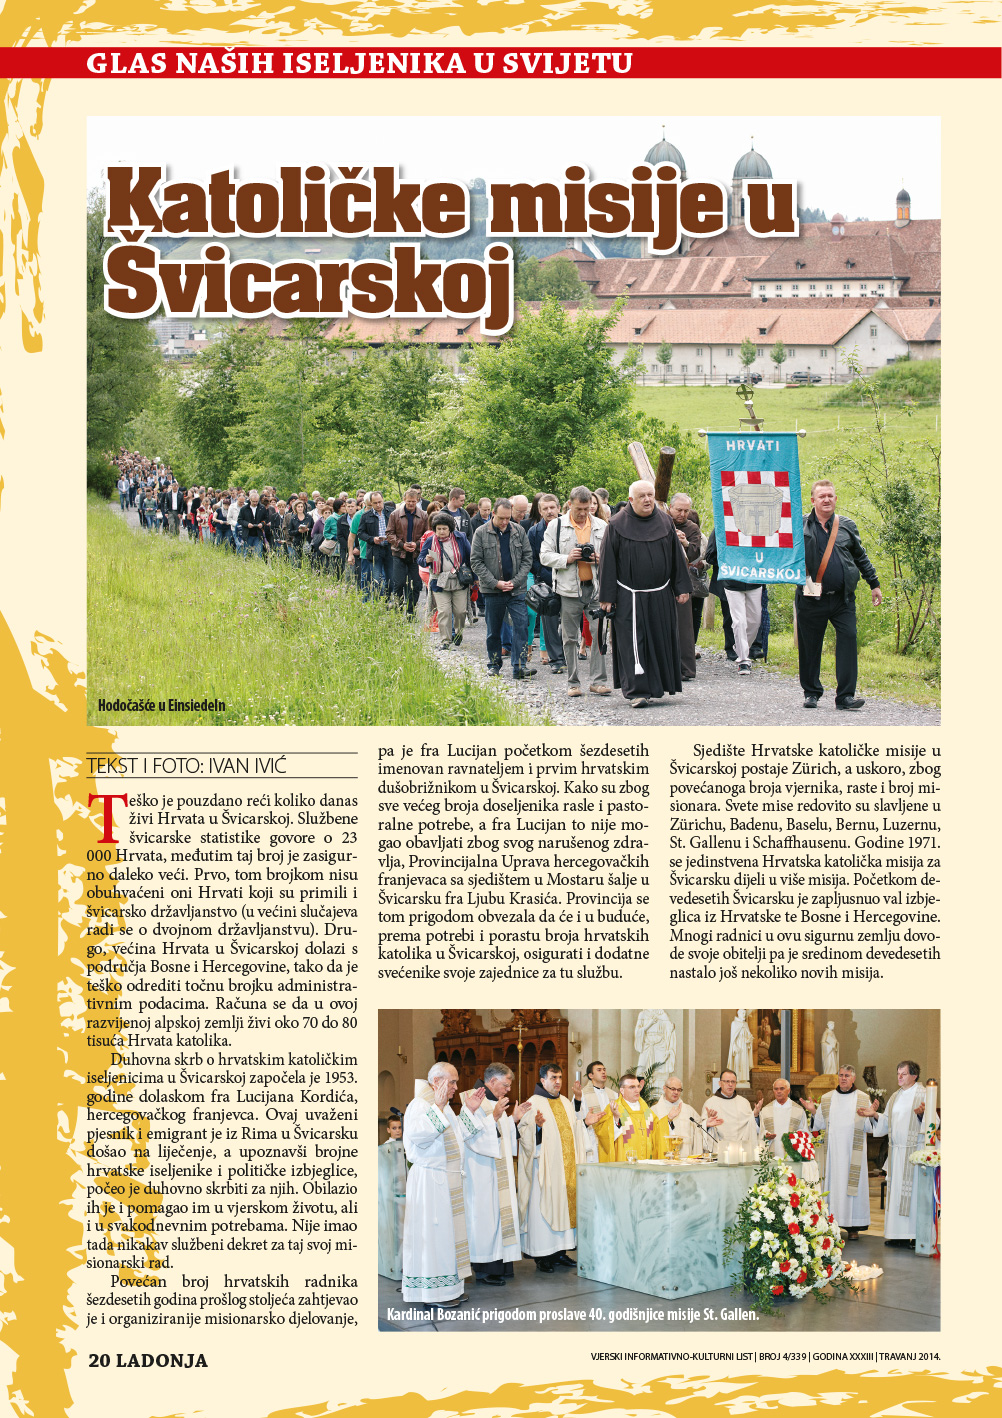 Prilog o hrvatskim katoličkim misijama u Švicarskoj u mjesečniku Ladonja.